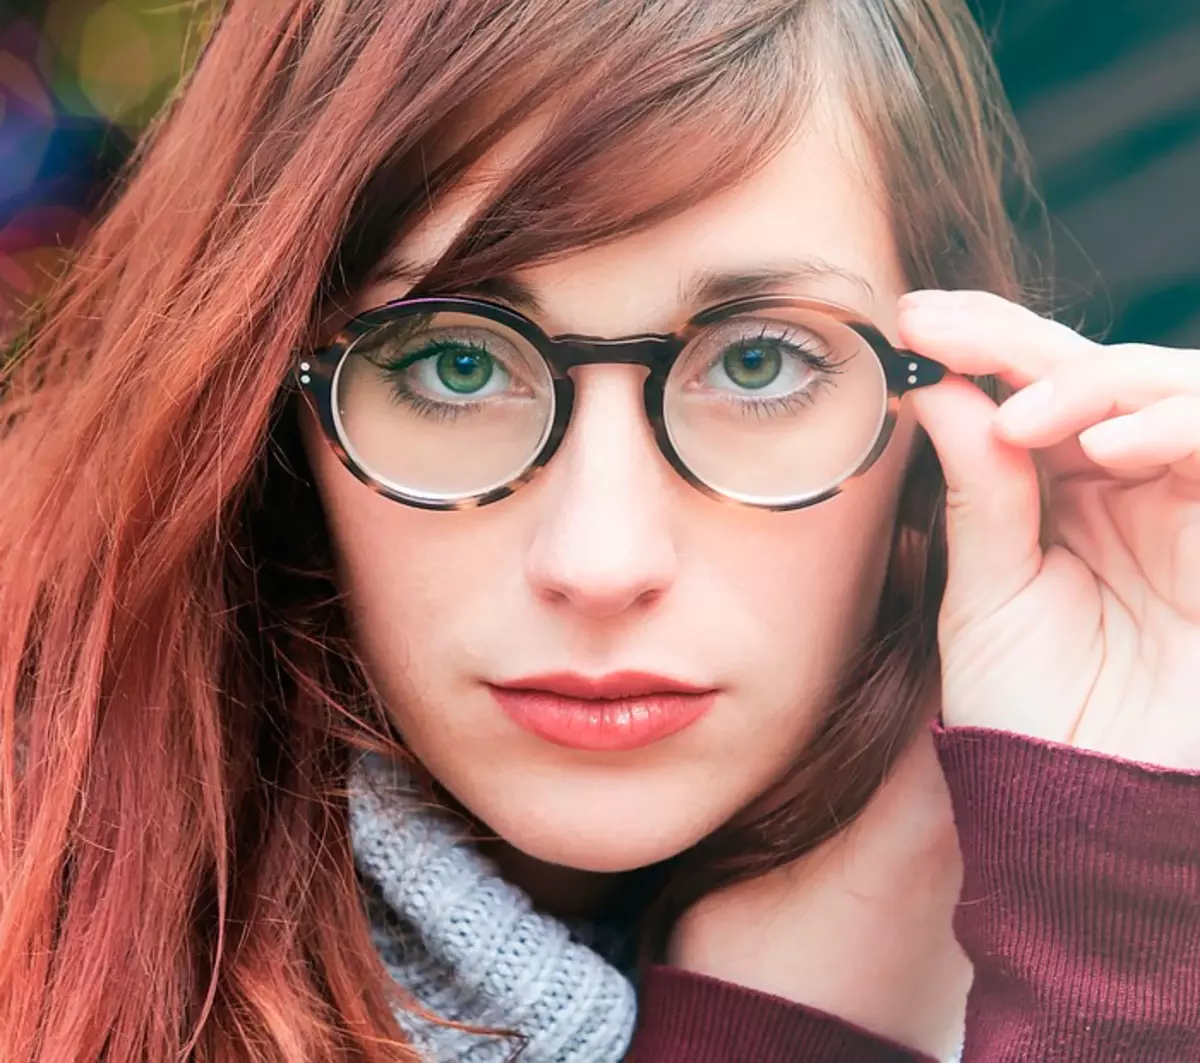 Gläser in geilen Frames erfordern kein aktives Make-up